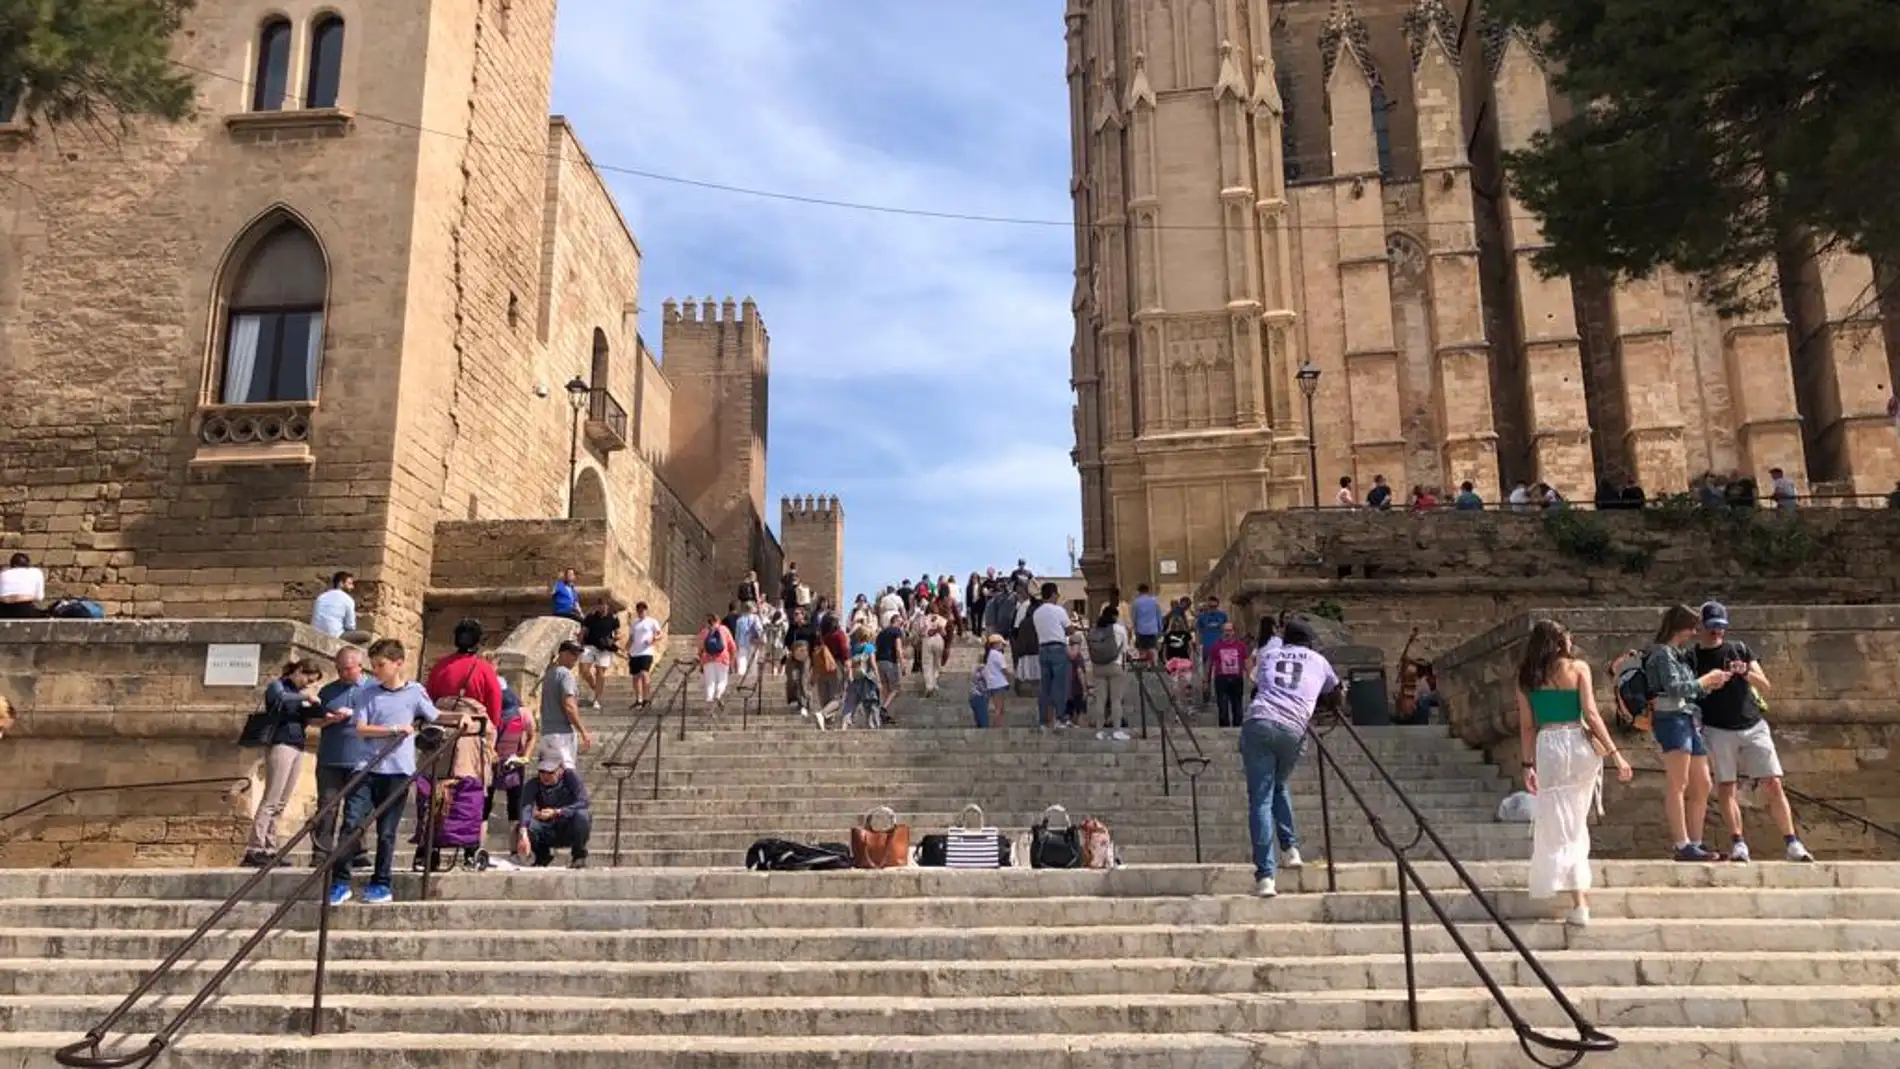 Turistas en los alrededores del Palacio Real de La Almudaina de Palma y la Catedral de Mallorca